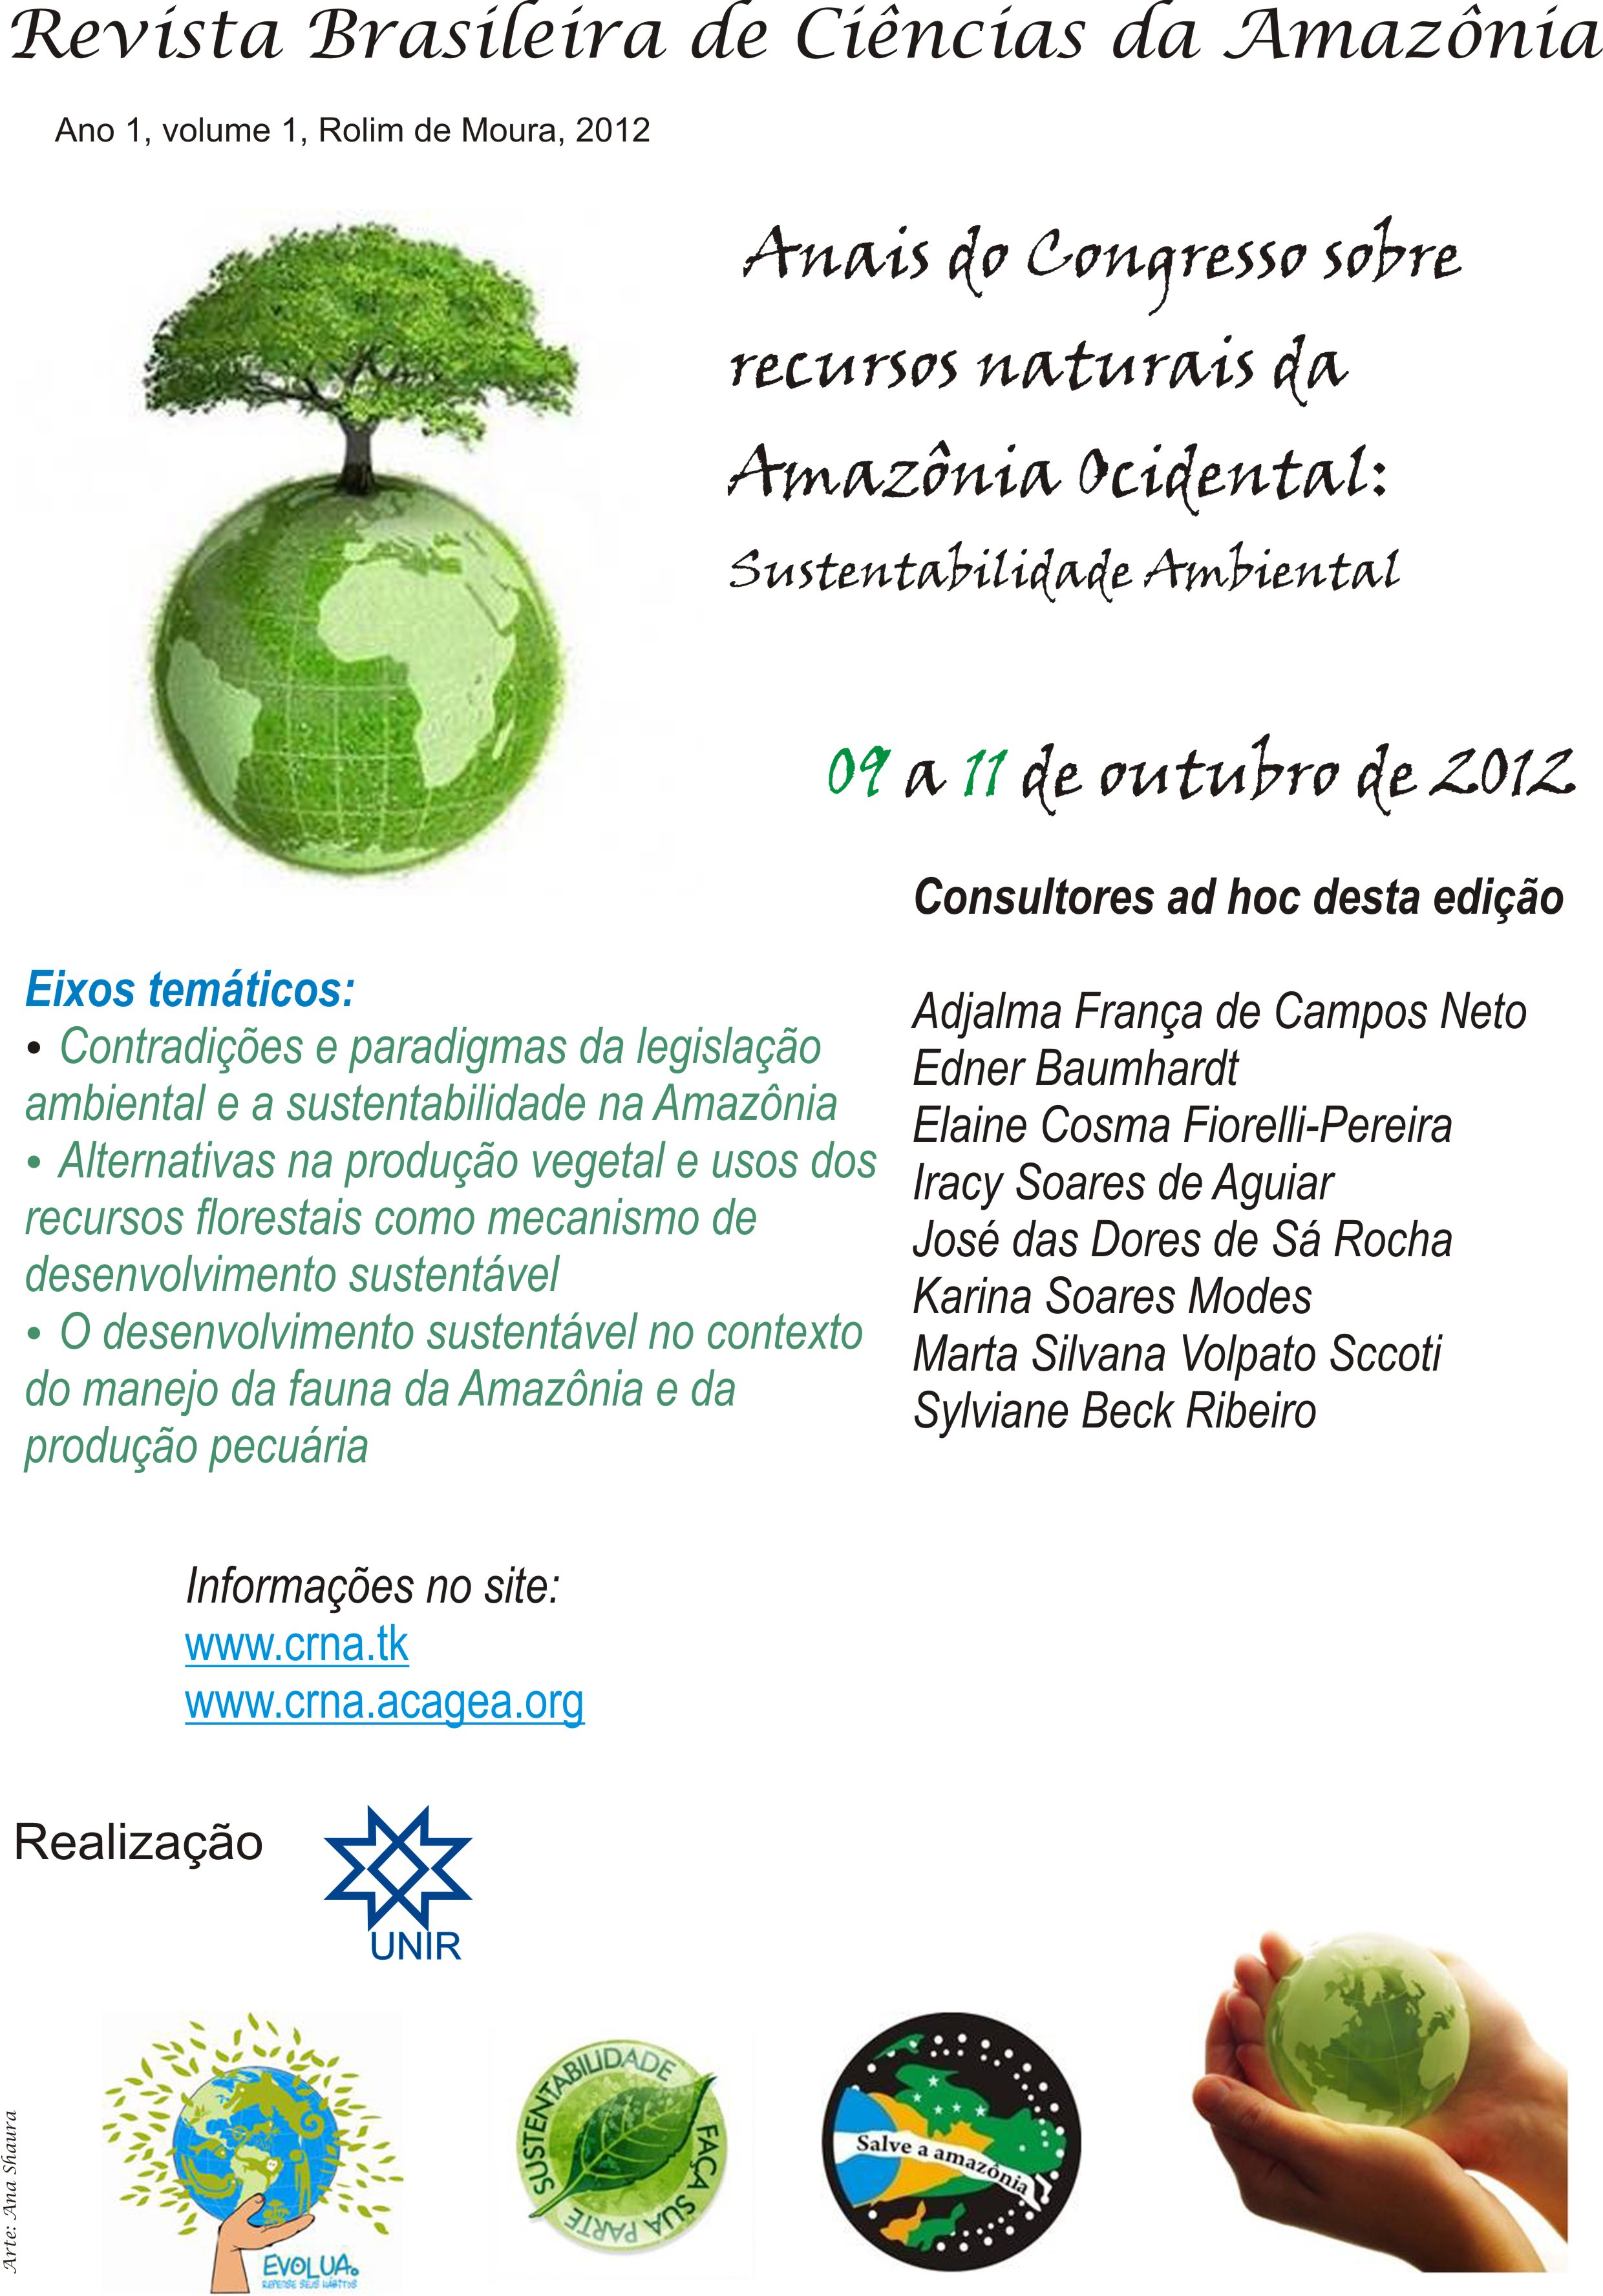 					Visualizar v. 1 n. 1 (2012): Edição especial - Anais do Congresso sobre recursos naturais da Amazônia Ocidental
				